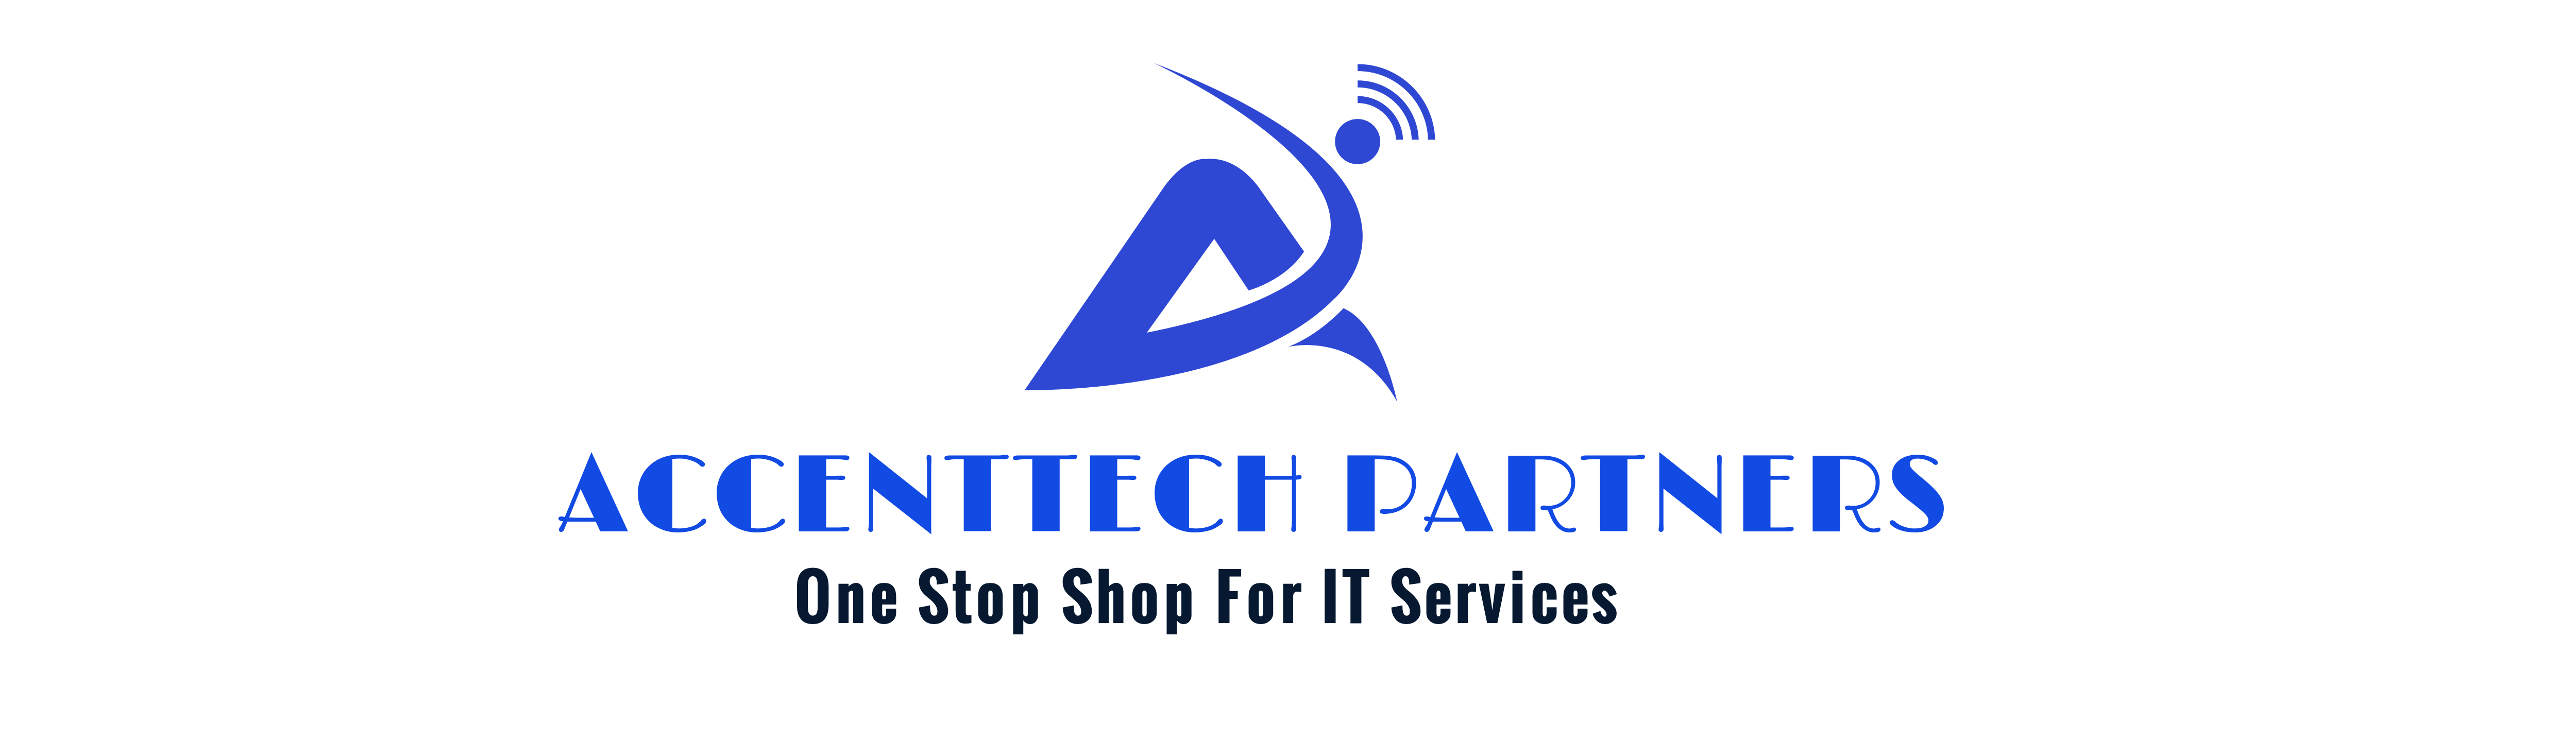 AccentTech Partners